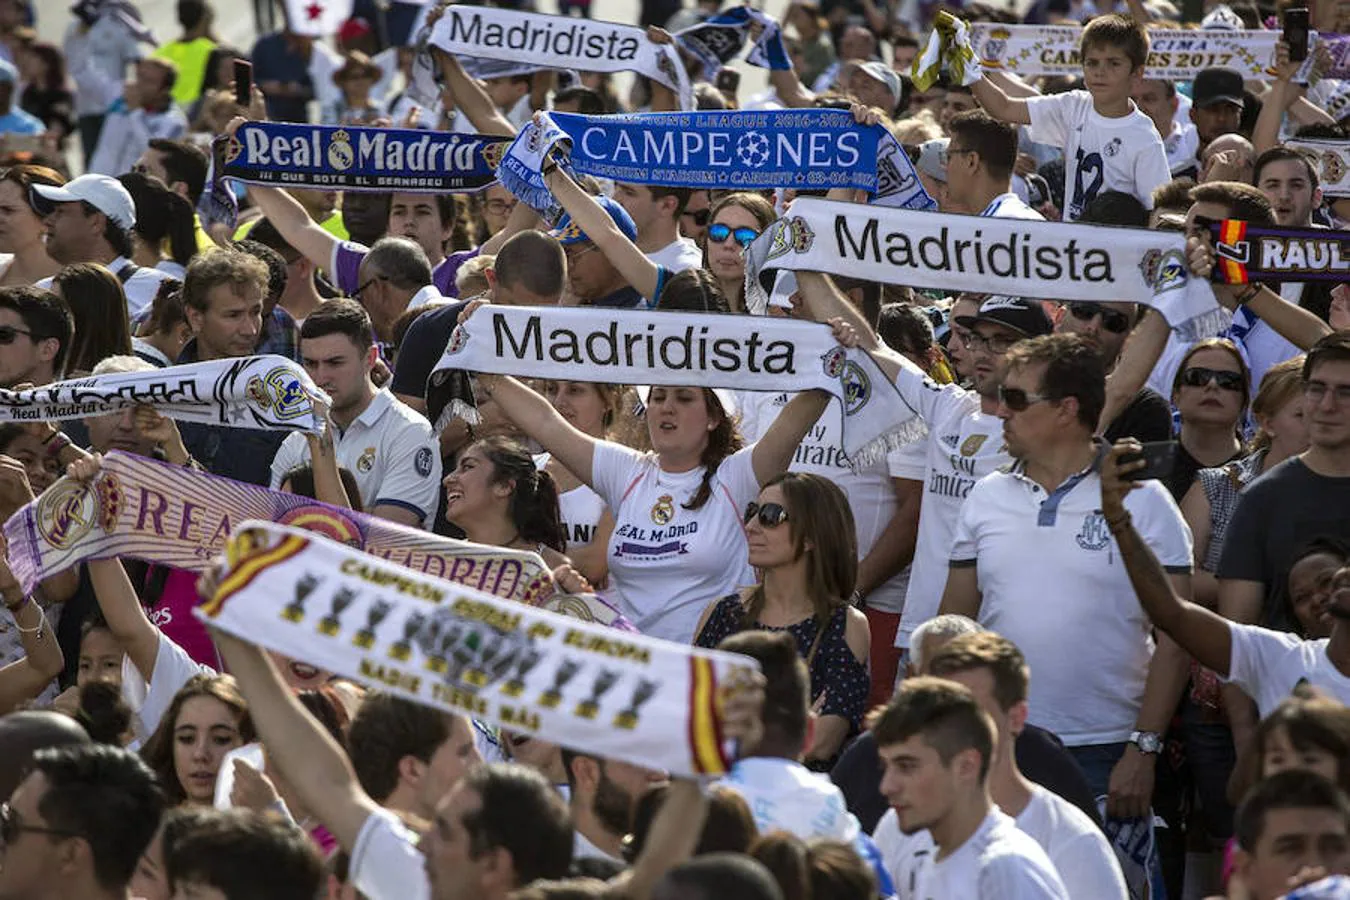 Aficionados del Real Madrid esperan la llegada del equipo madridista a la madrileña plaza de Cibeles, para celebrar el título conseguido de Liga de Campeones en la final disputada ayer sábado frente a la Juventus en el estadio Millenium de Cardiff.